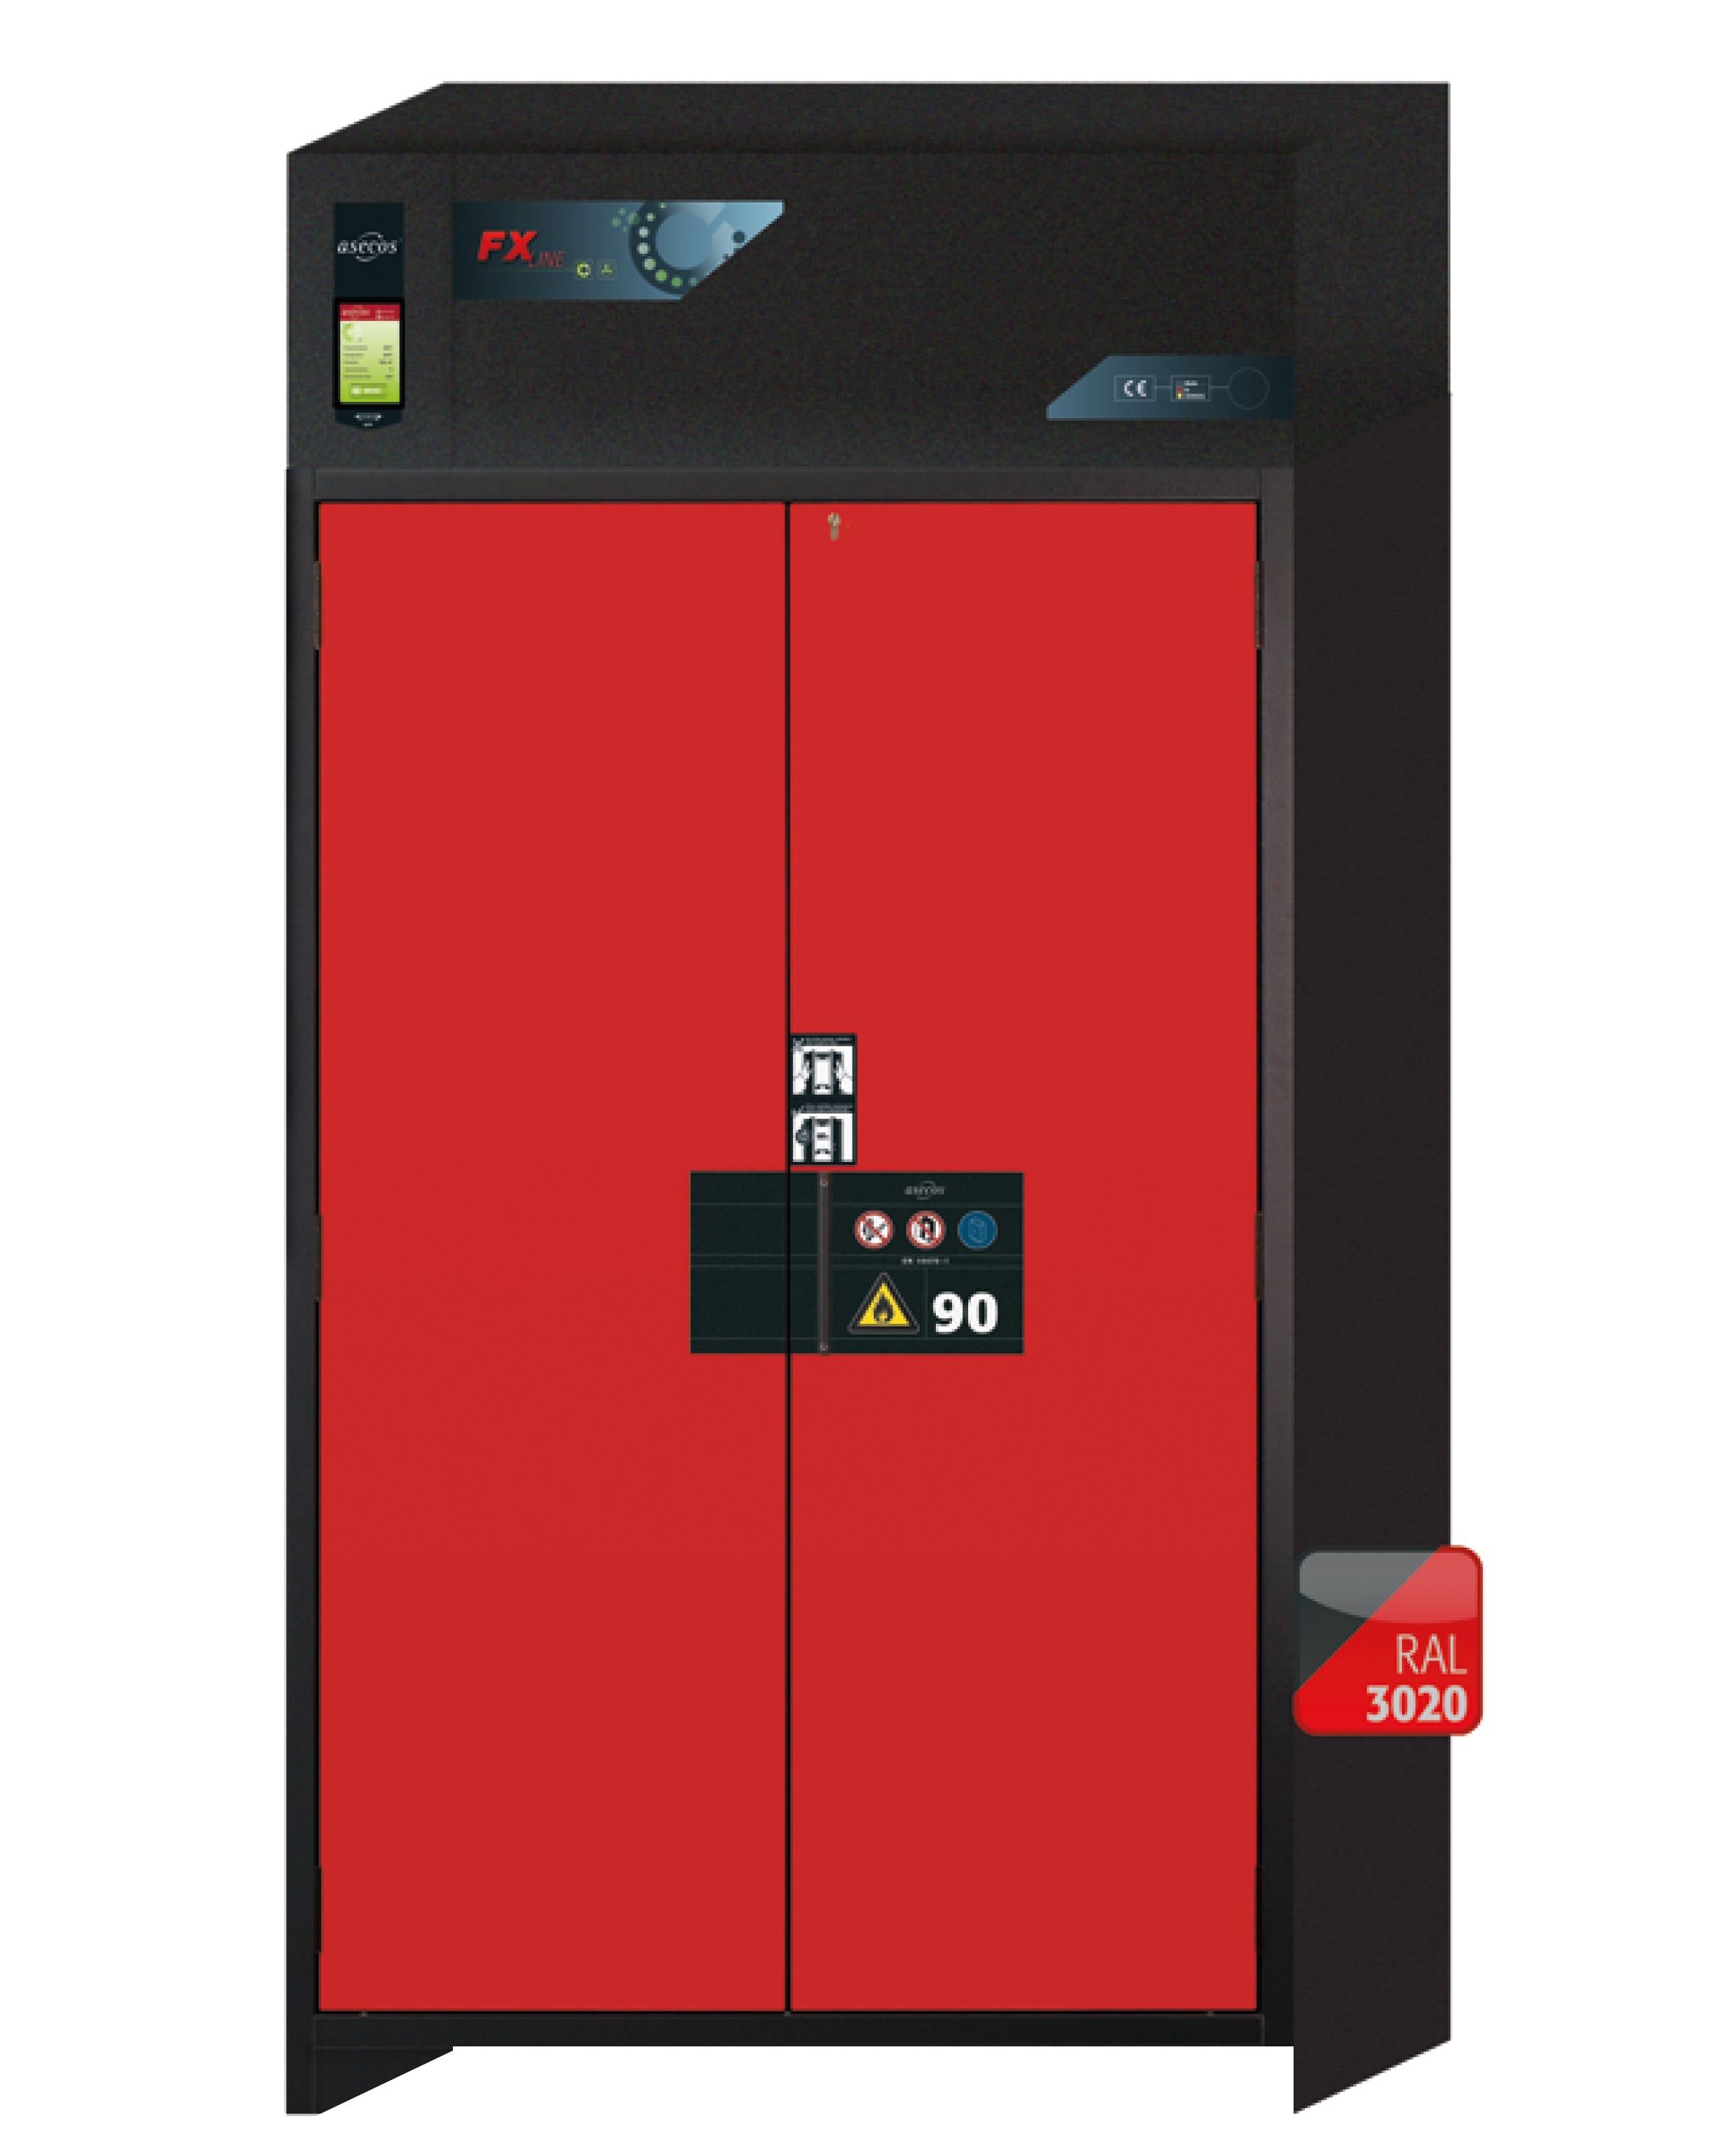 Armoire de filtration d'air recyclé type 90 FX-PEGASUS-90 modèle FX90.229.120.WDAC en rouge signalisation RAL 3020 avec 3 plateaux coulissants standard (tôle d'acier)